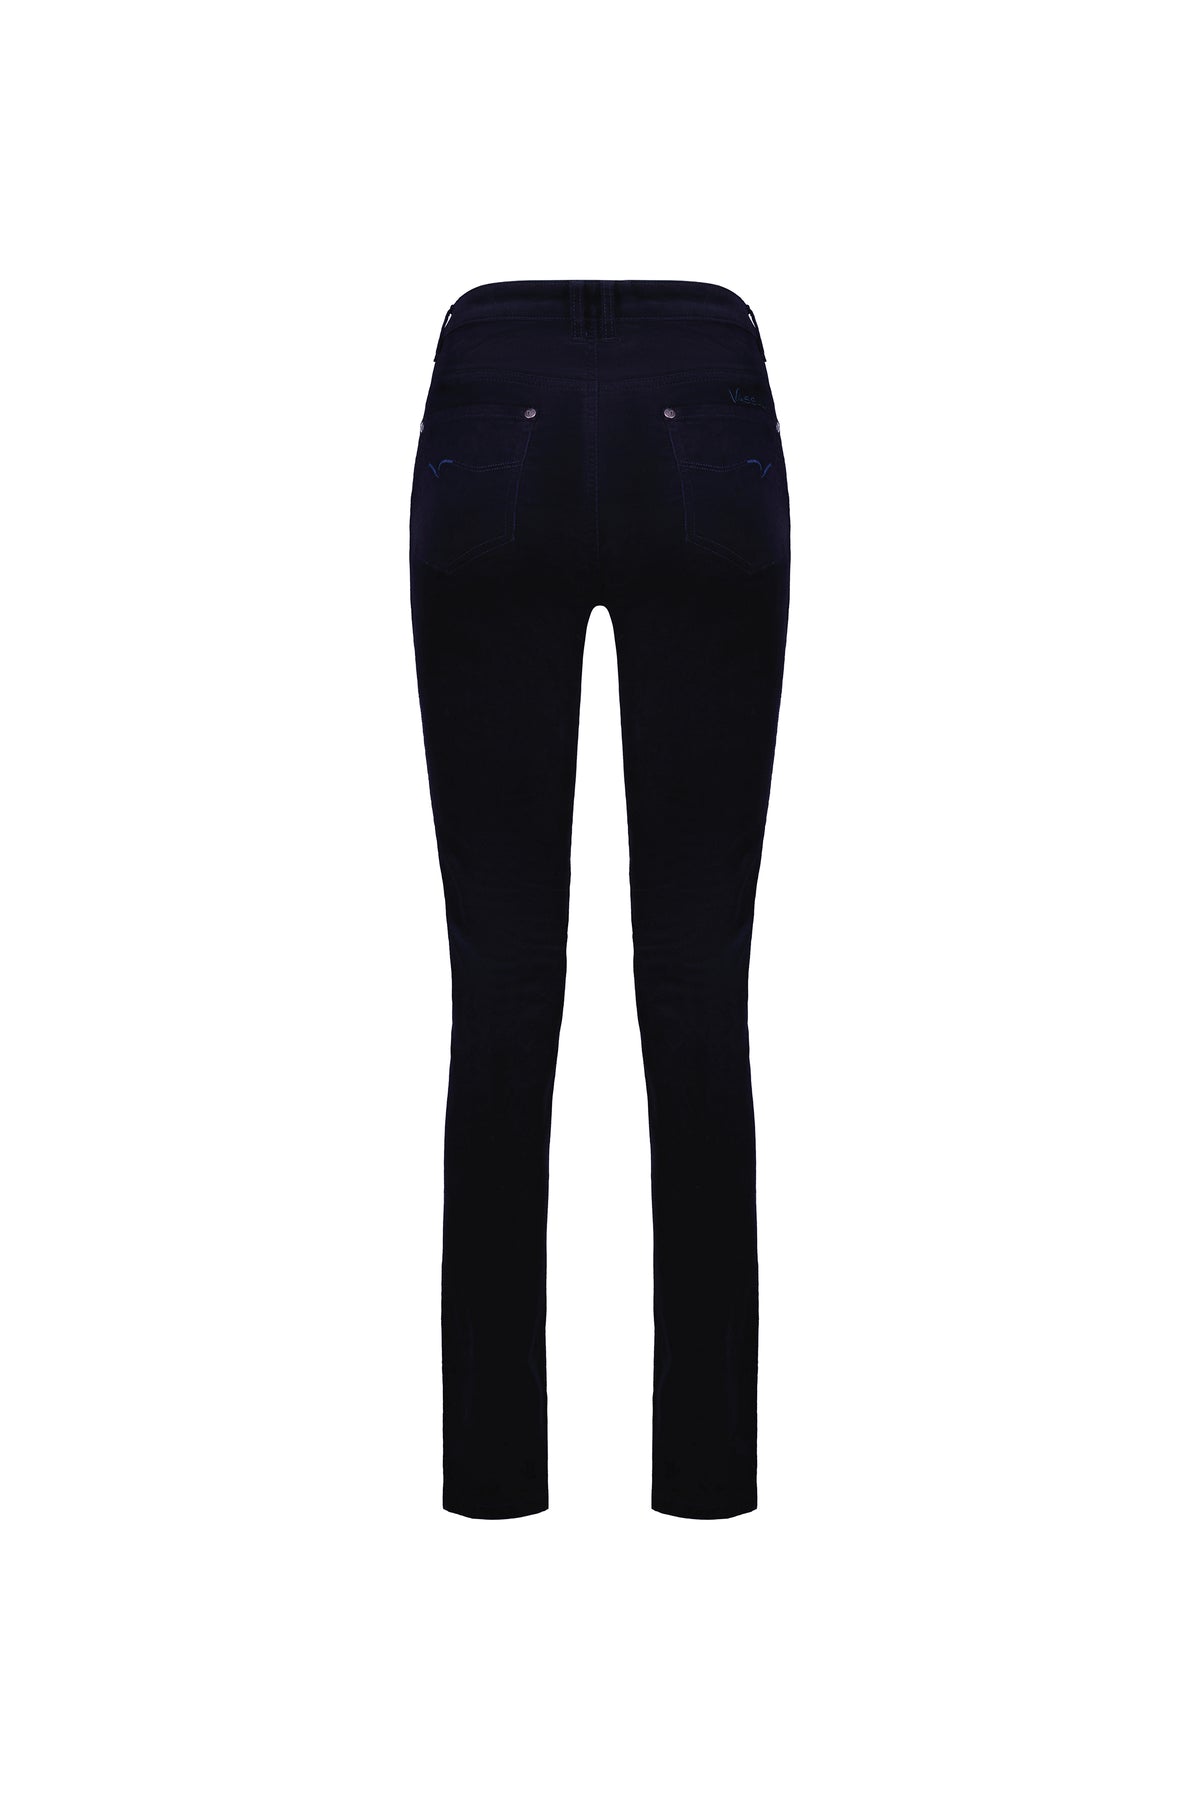 Vassalli - Jean Style Narrow Leg Cord Pant - Midnight